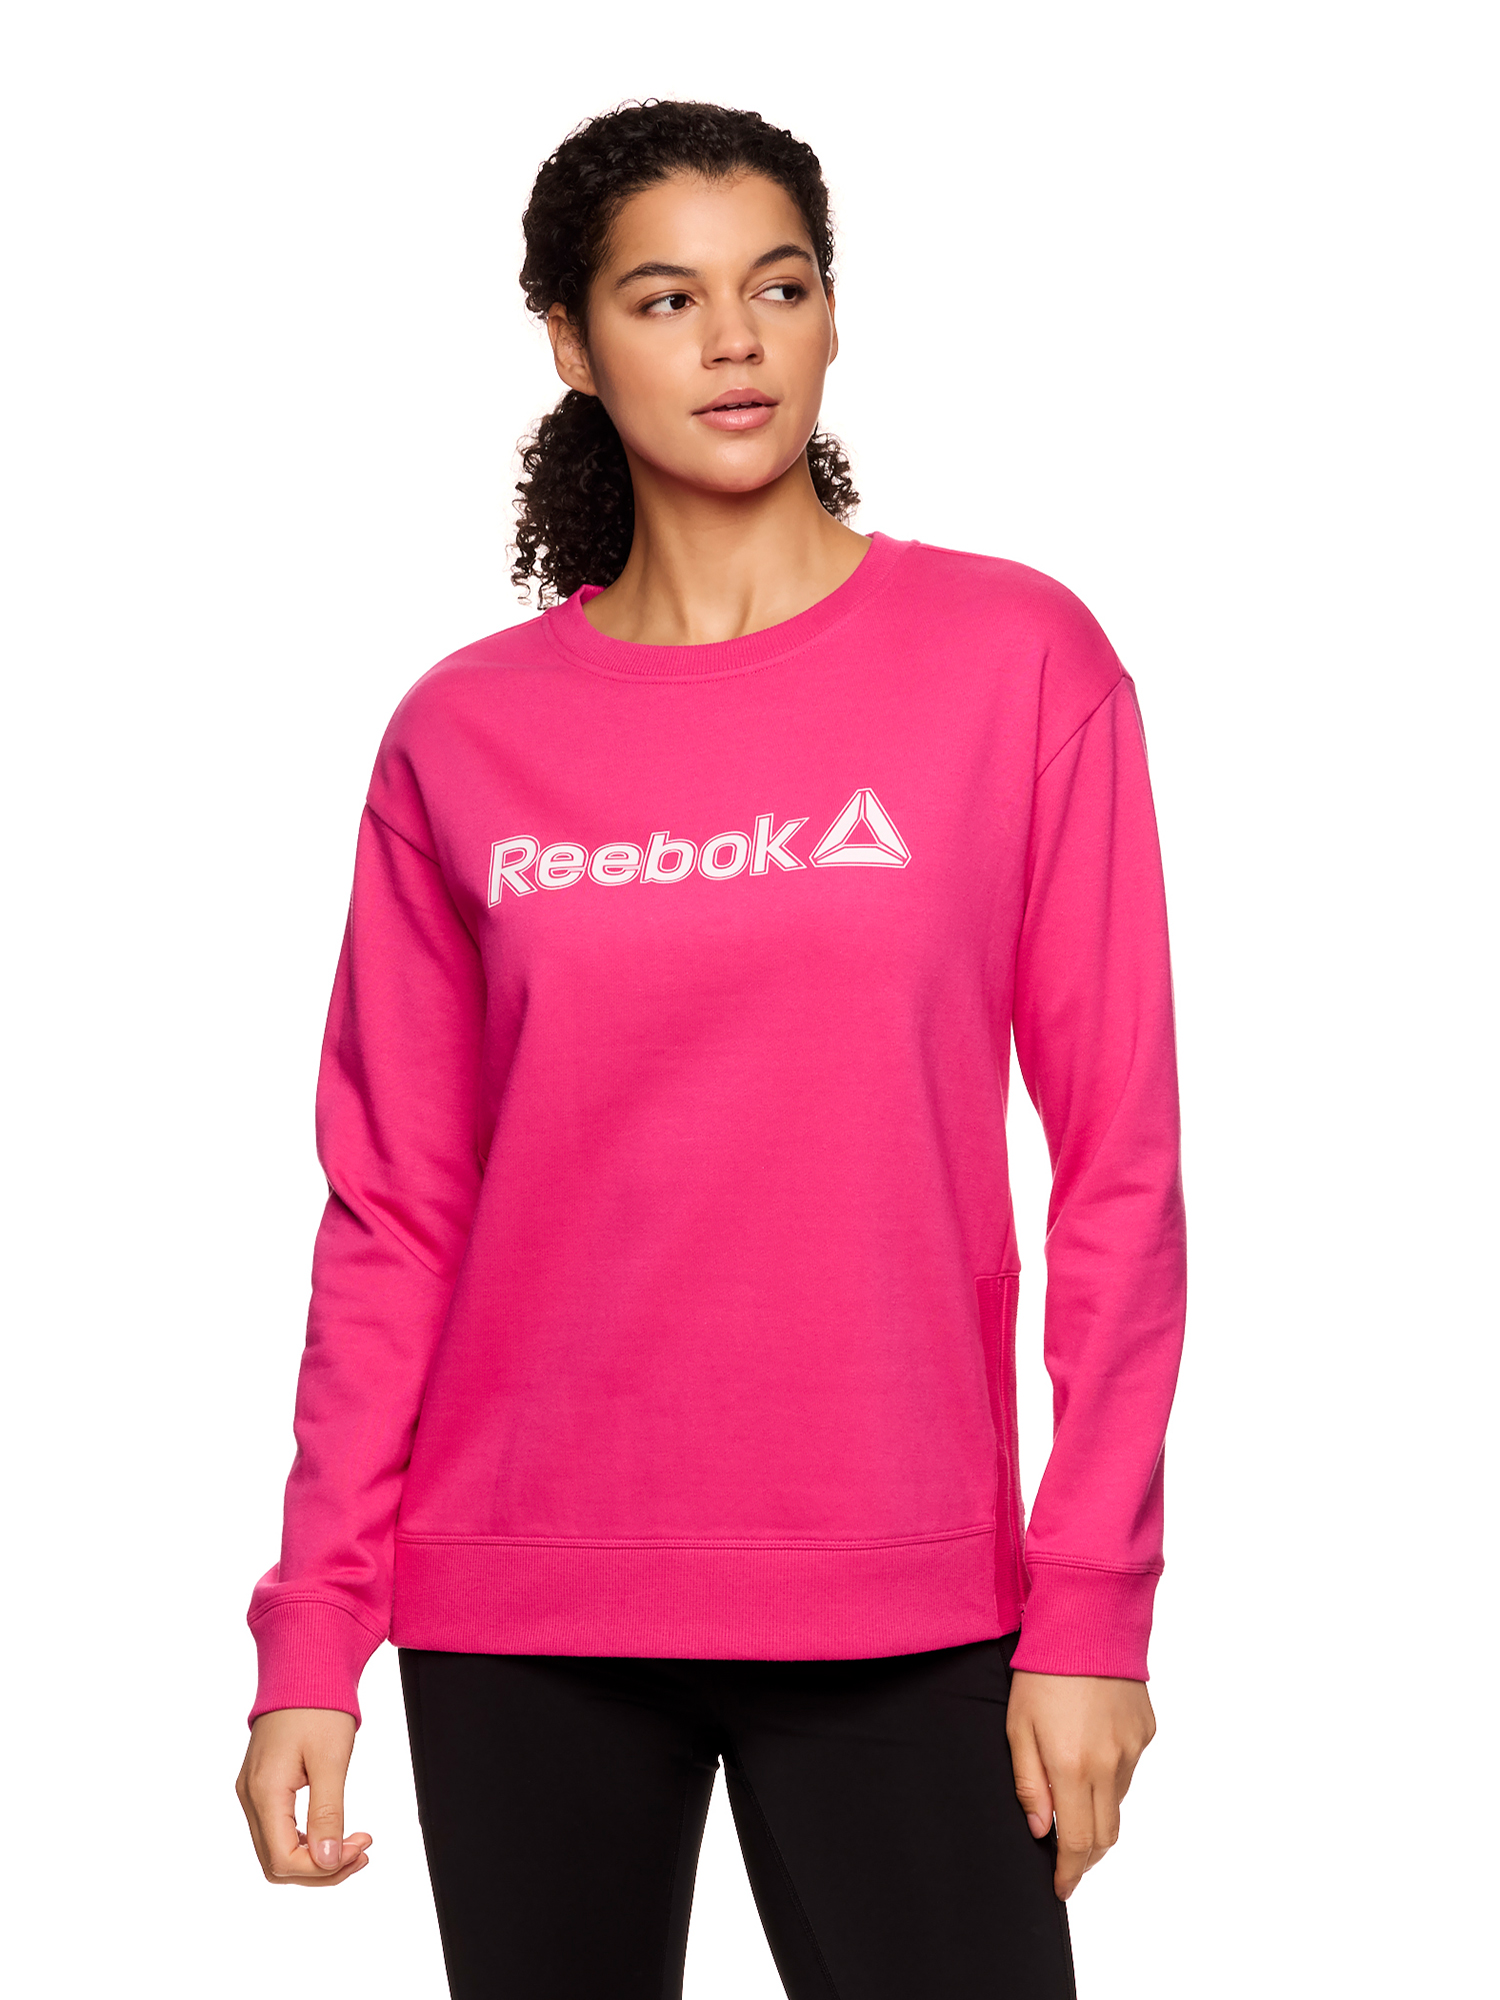 Reebok Womens Branded Graphic Crewneck with Side Zipper, Sizes Xs-xxxl